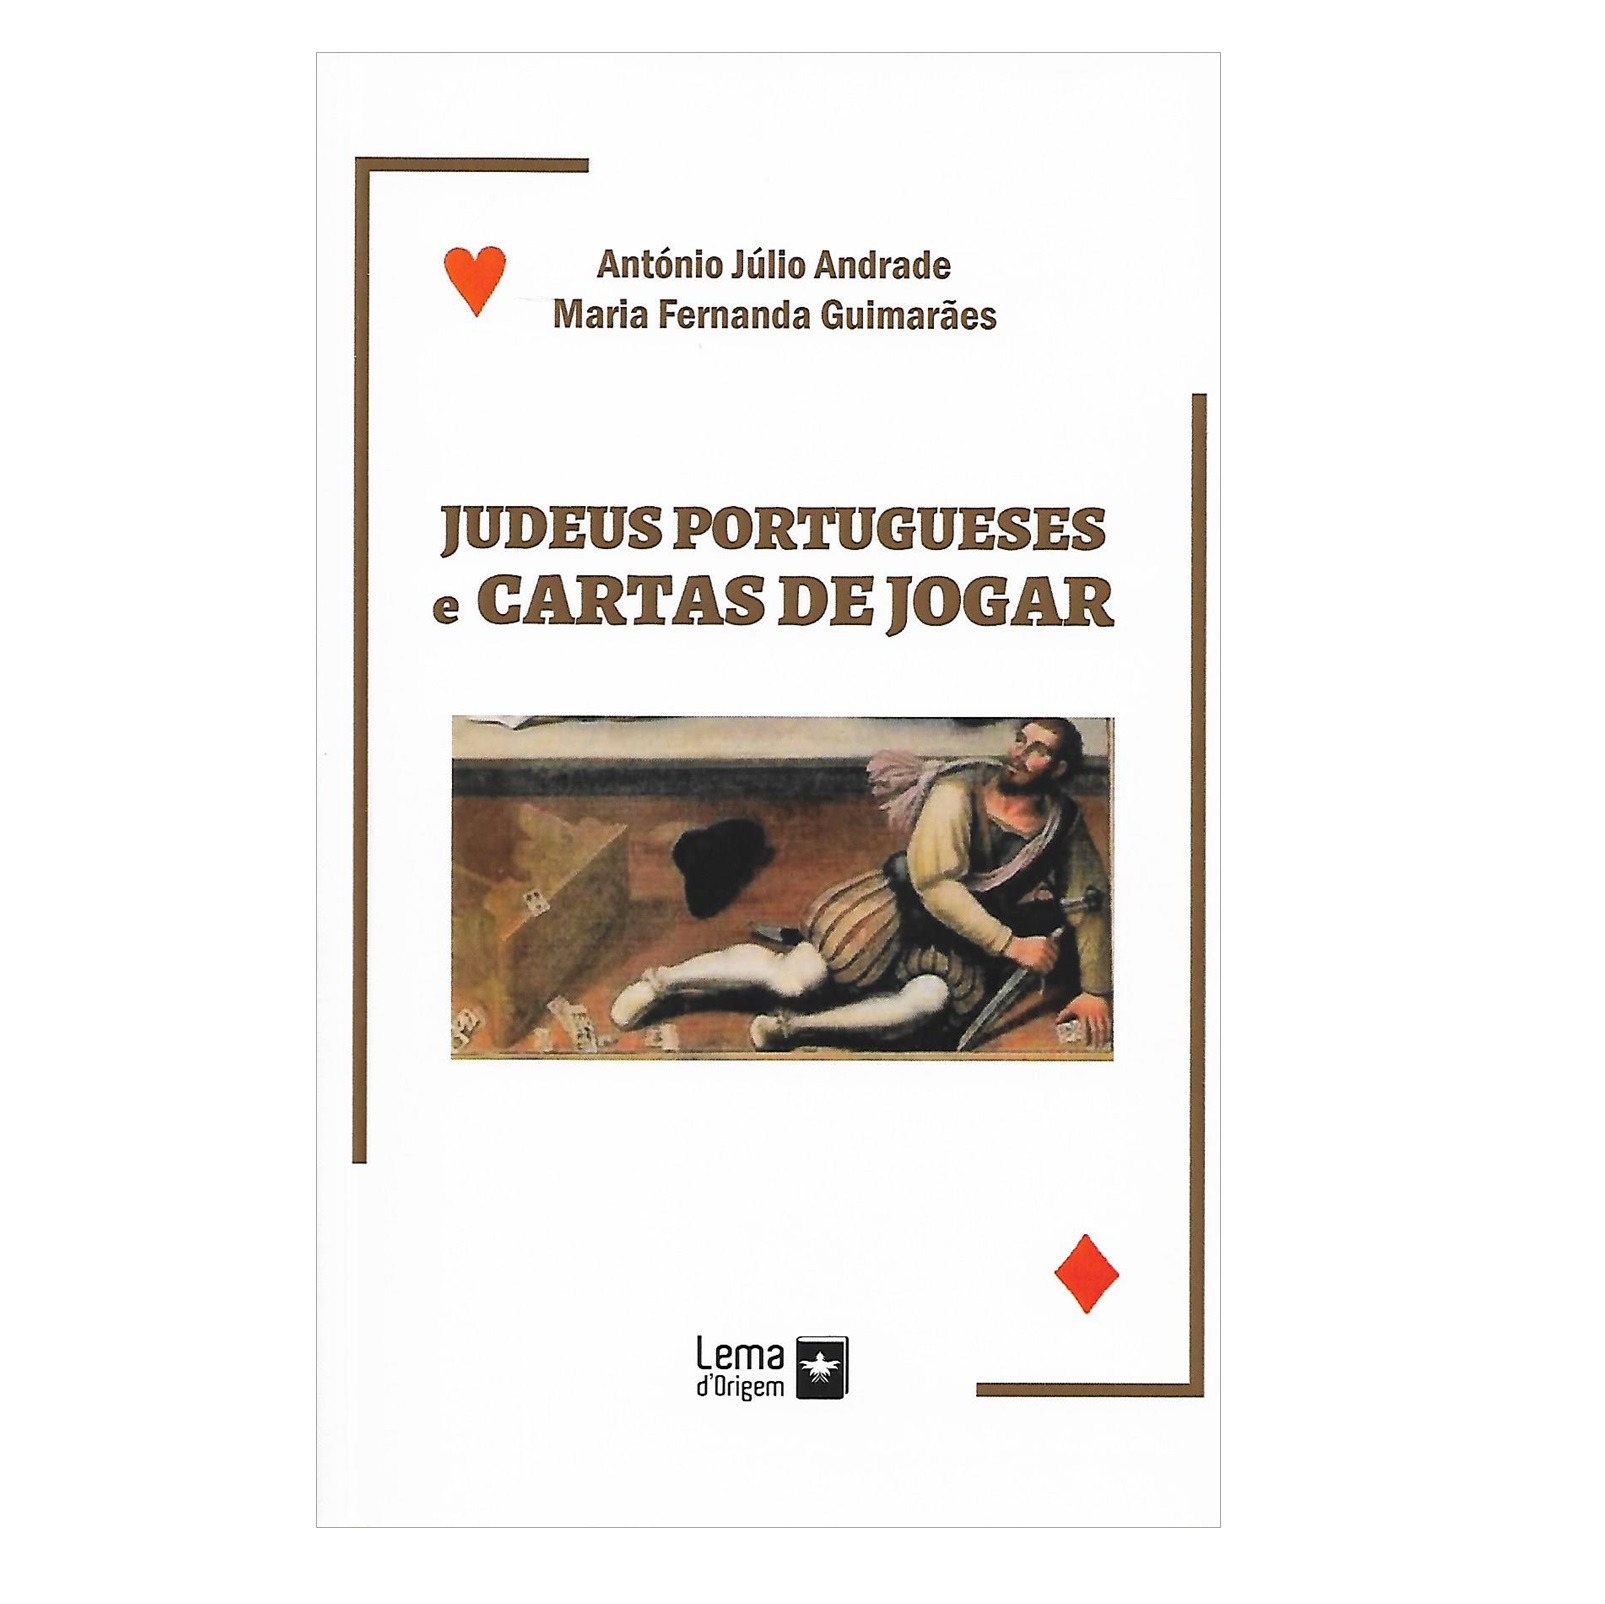 JUDEUS PORTUGUESES E CARTAS DE JOGAR